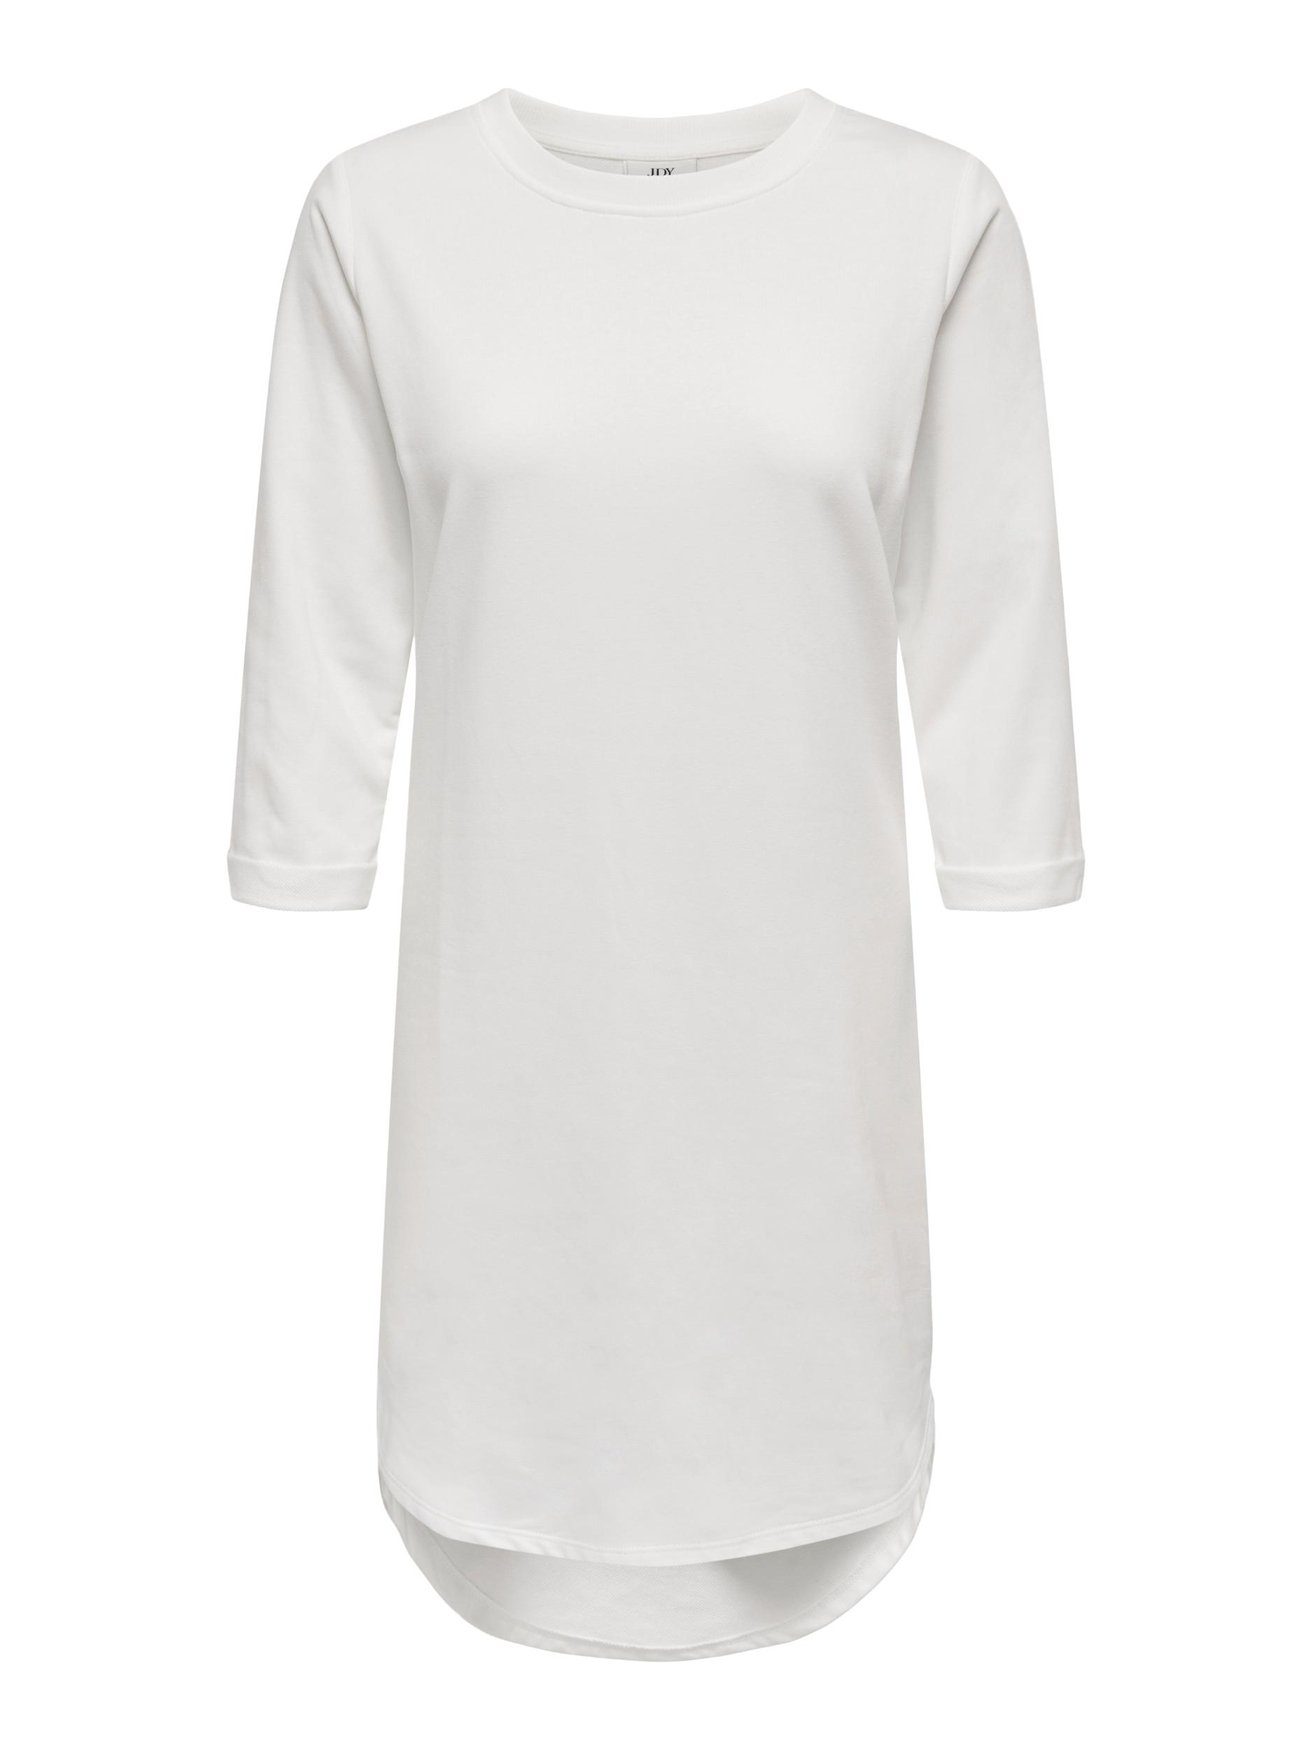 JACQUELINE de YONG Shirtkleid 3/4 Arm (knielang) 5608 JDYIVY Sweat Weiß-3 Rundhals in Kleid